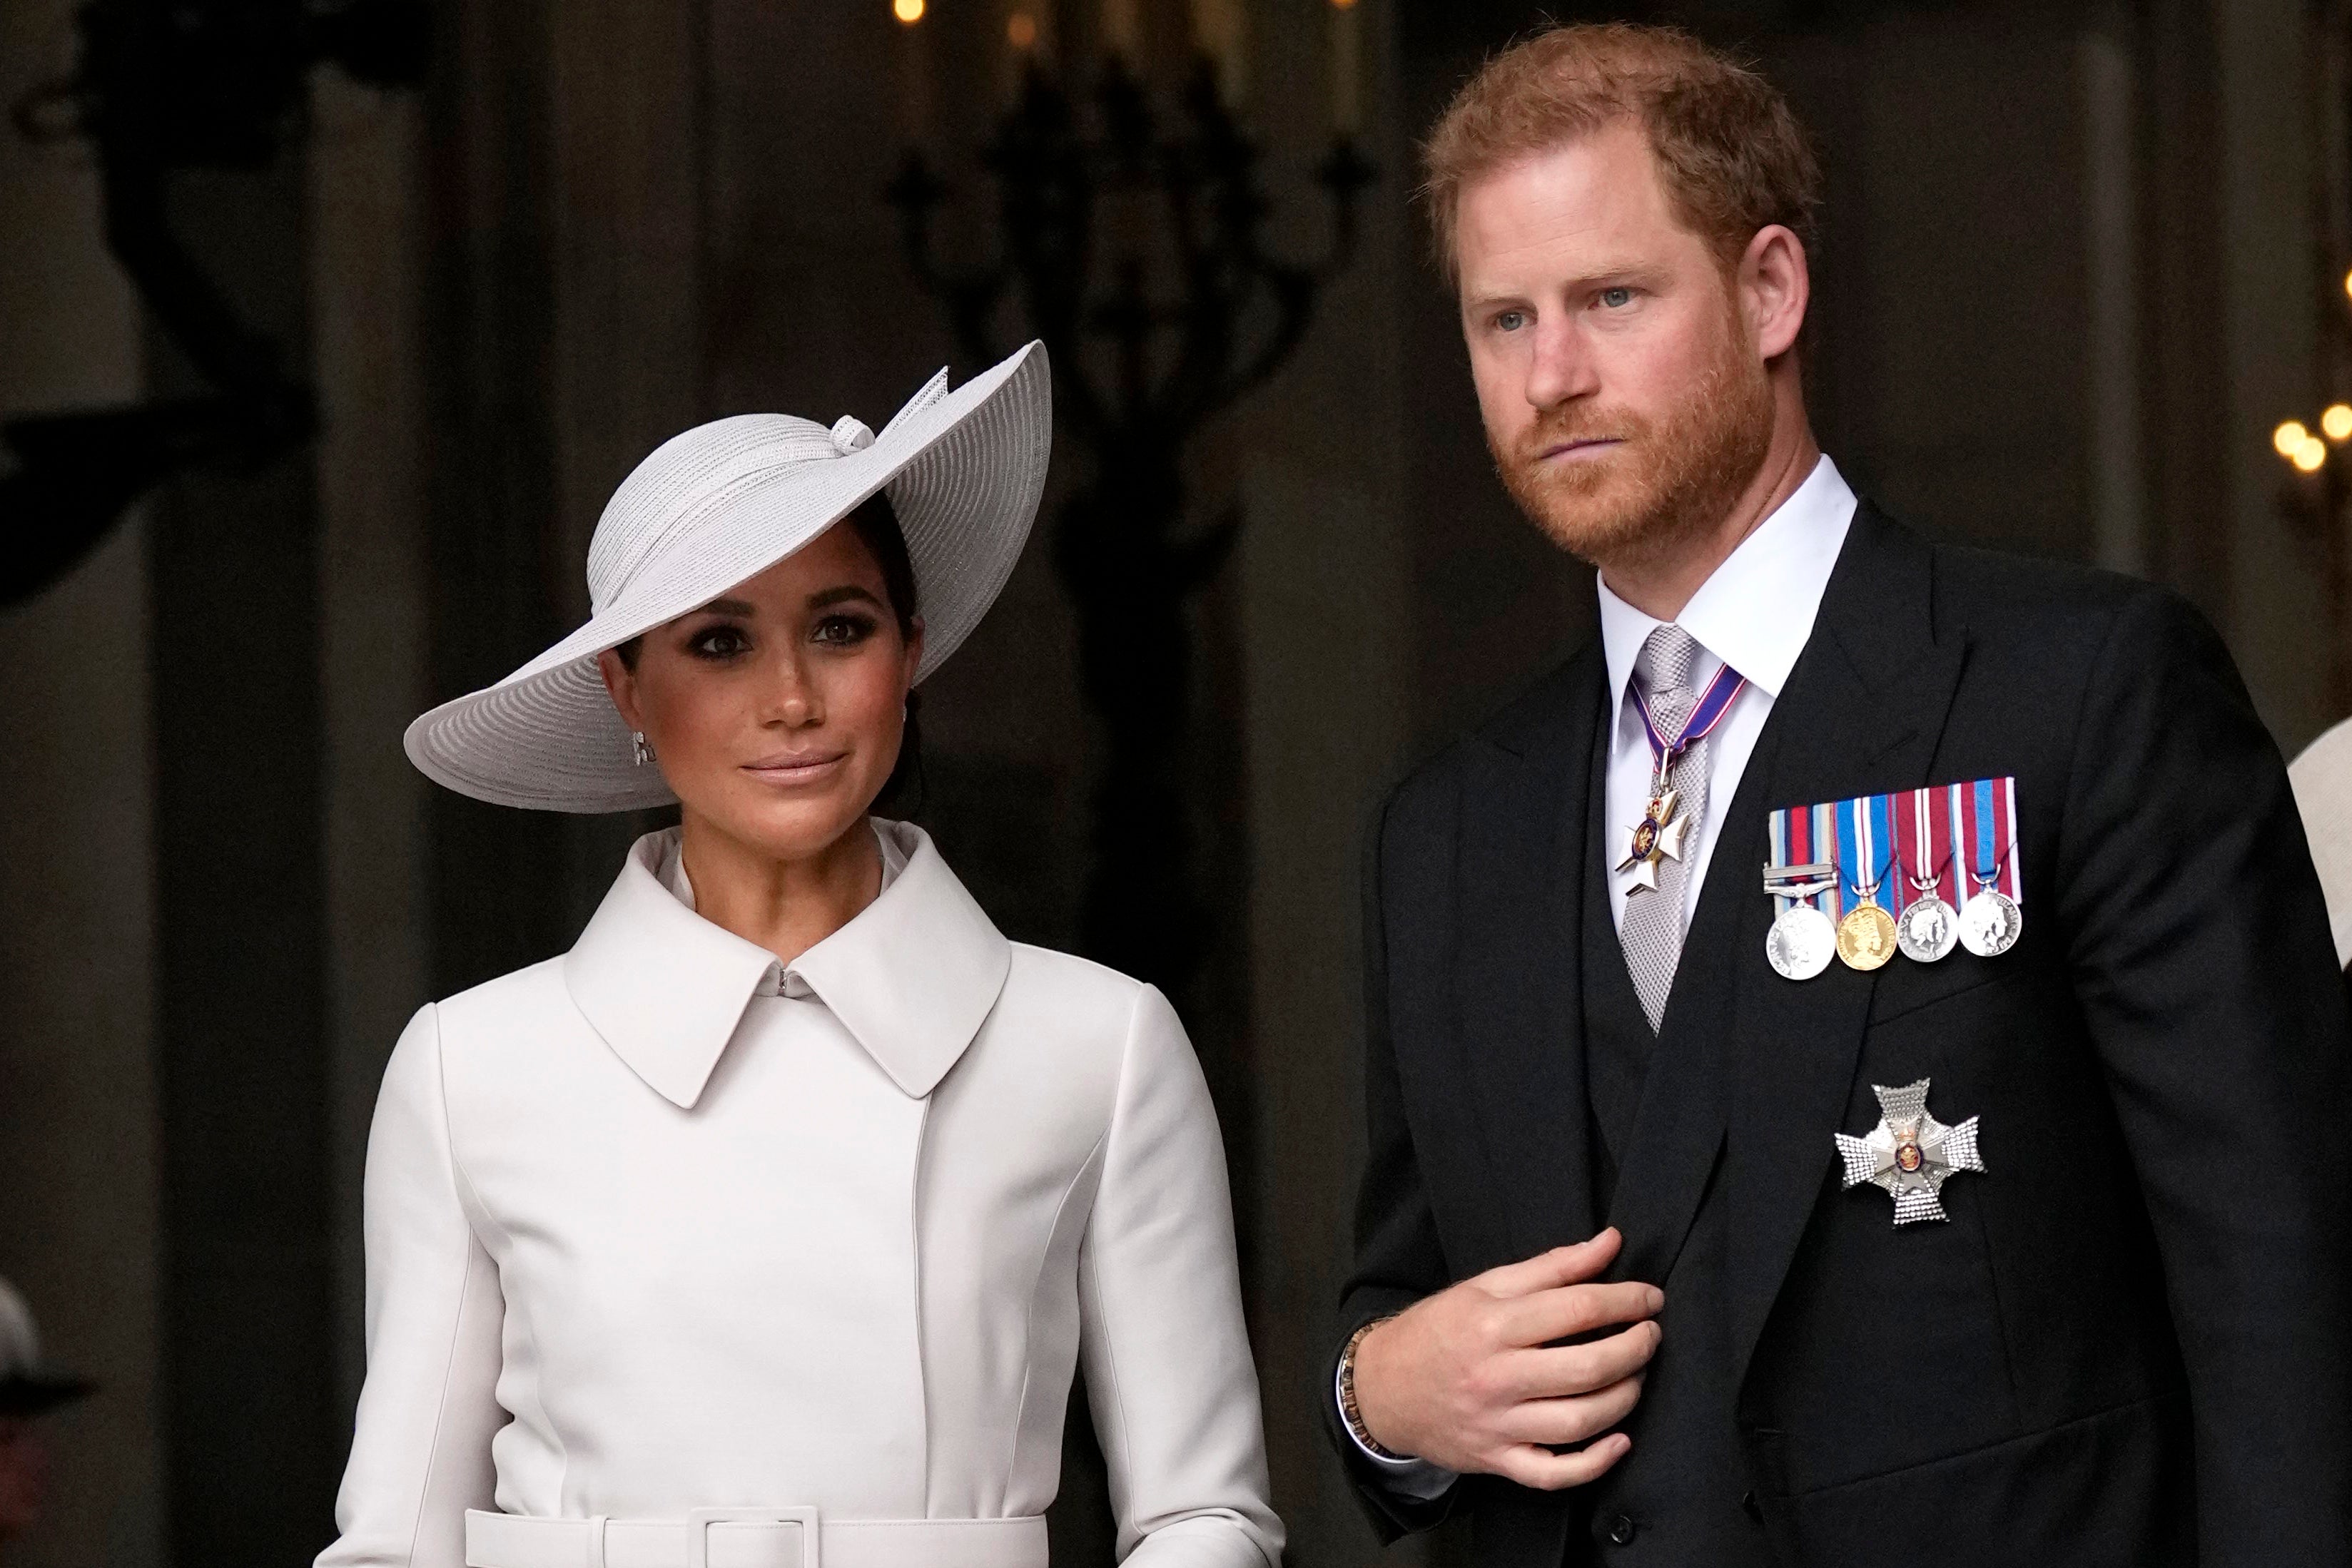 El príncipe Harry asistirá a la coronación; Meghan estará ausente y dejará un espacio abierto en la organización de asientos